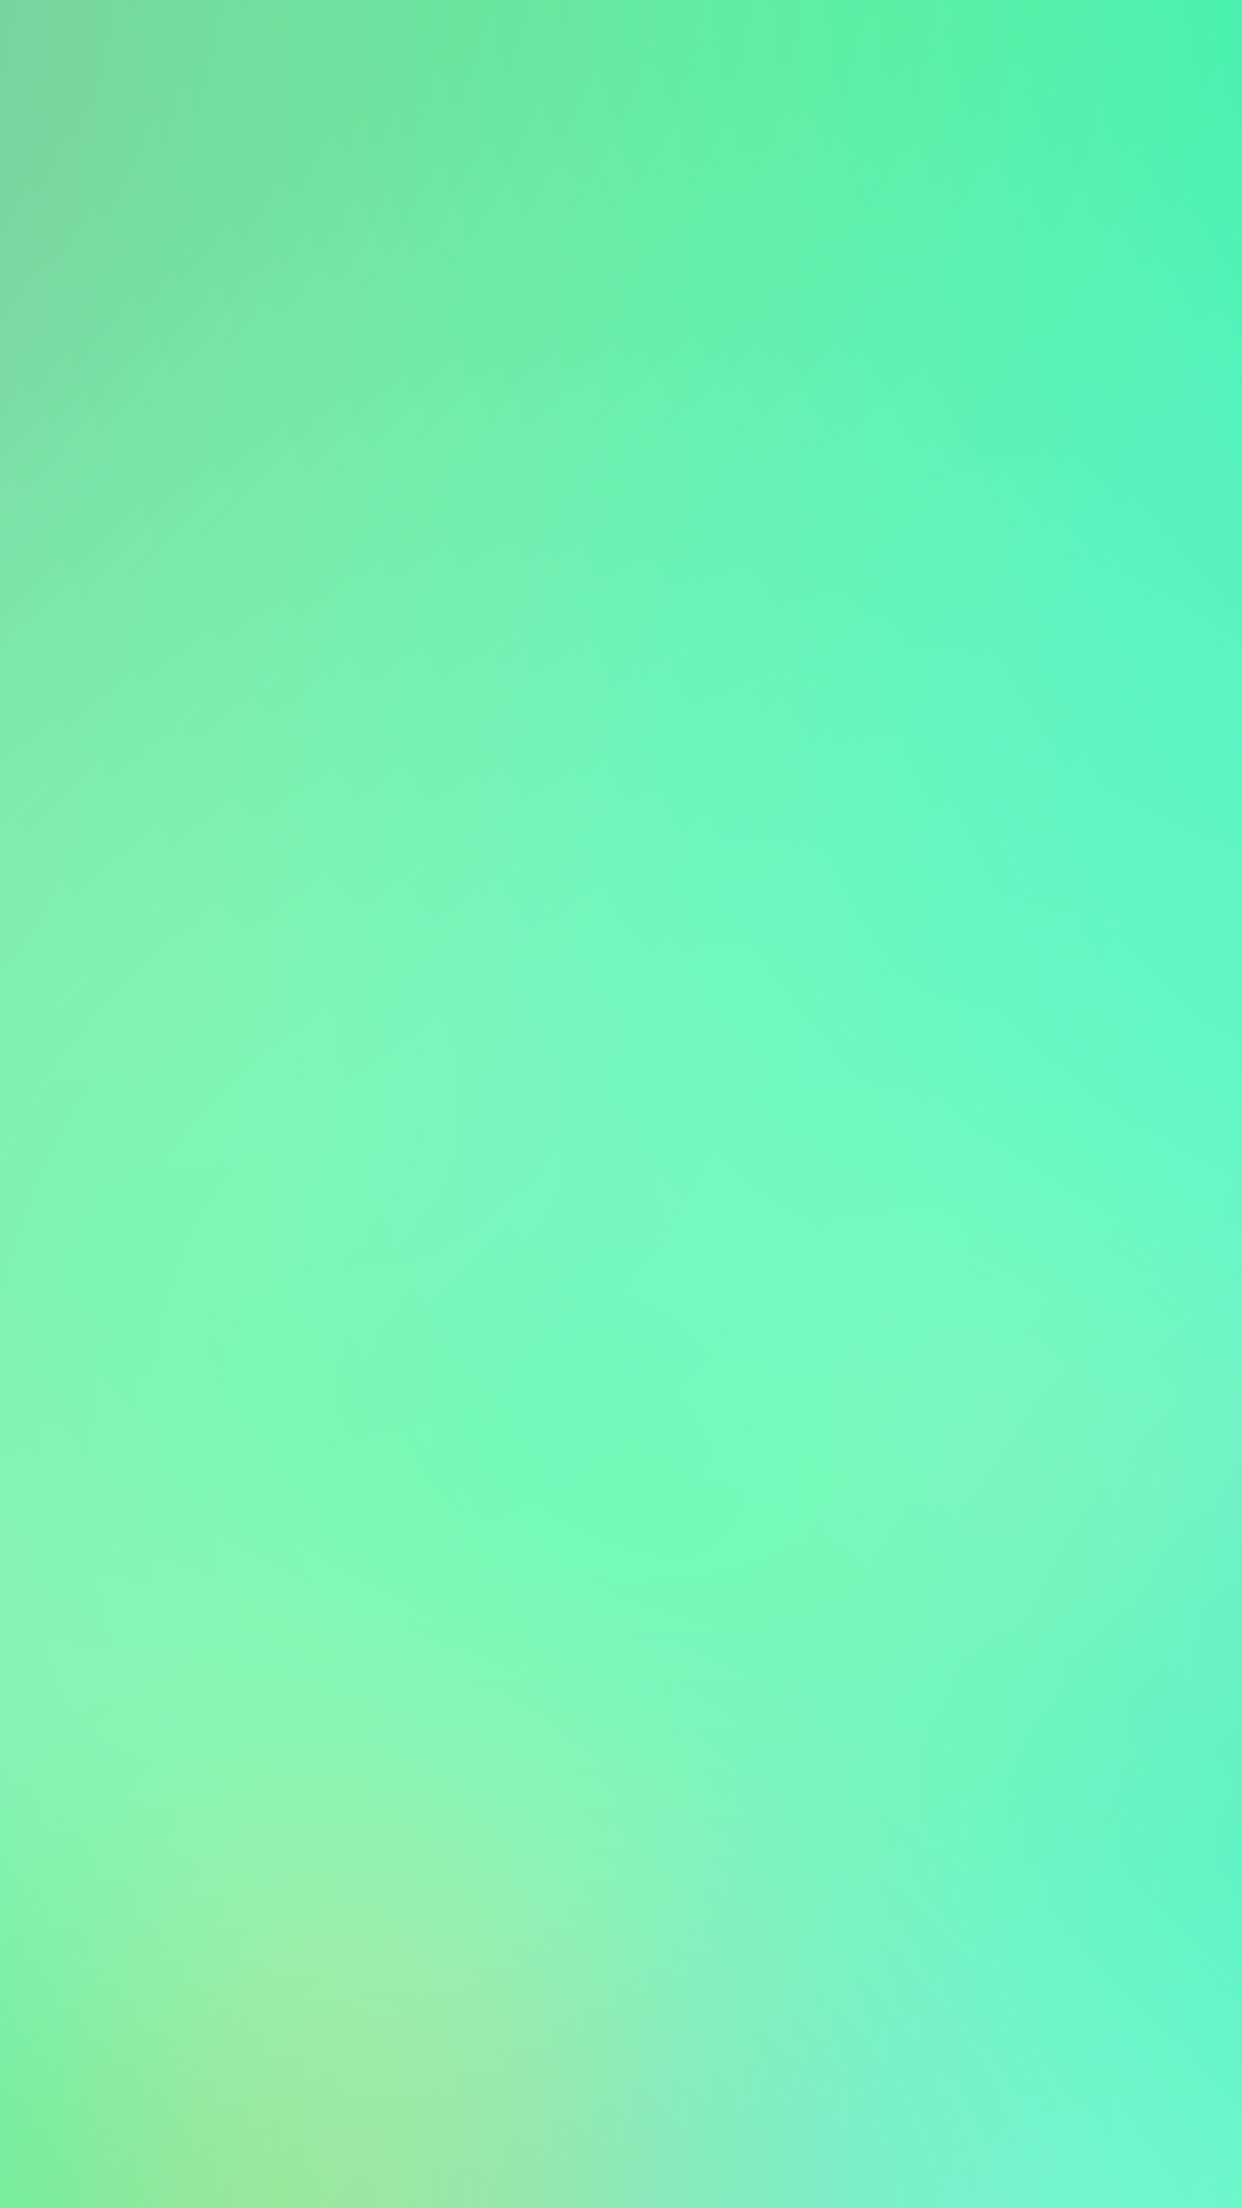 1242x2208 sg51-hip-green-blueish-mint-like-gradation-blur